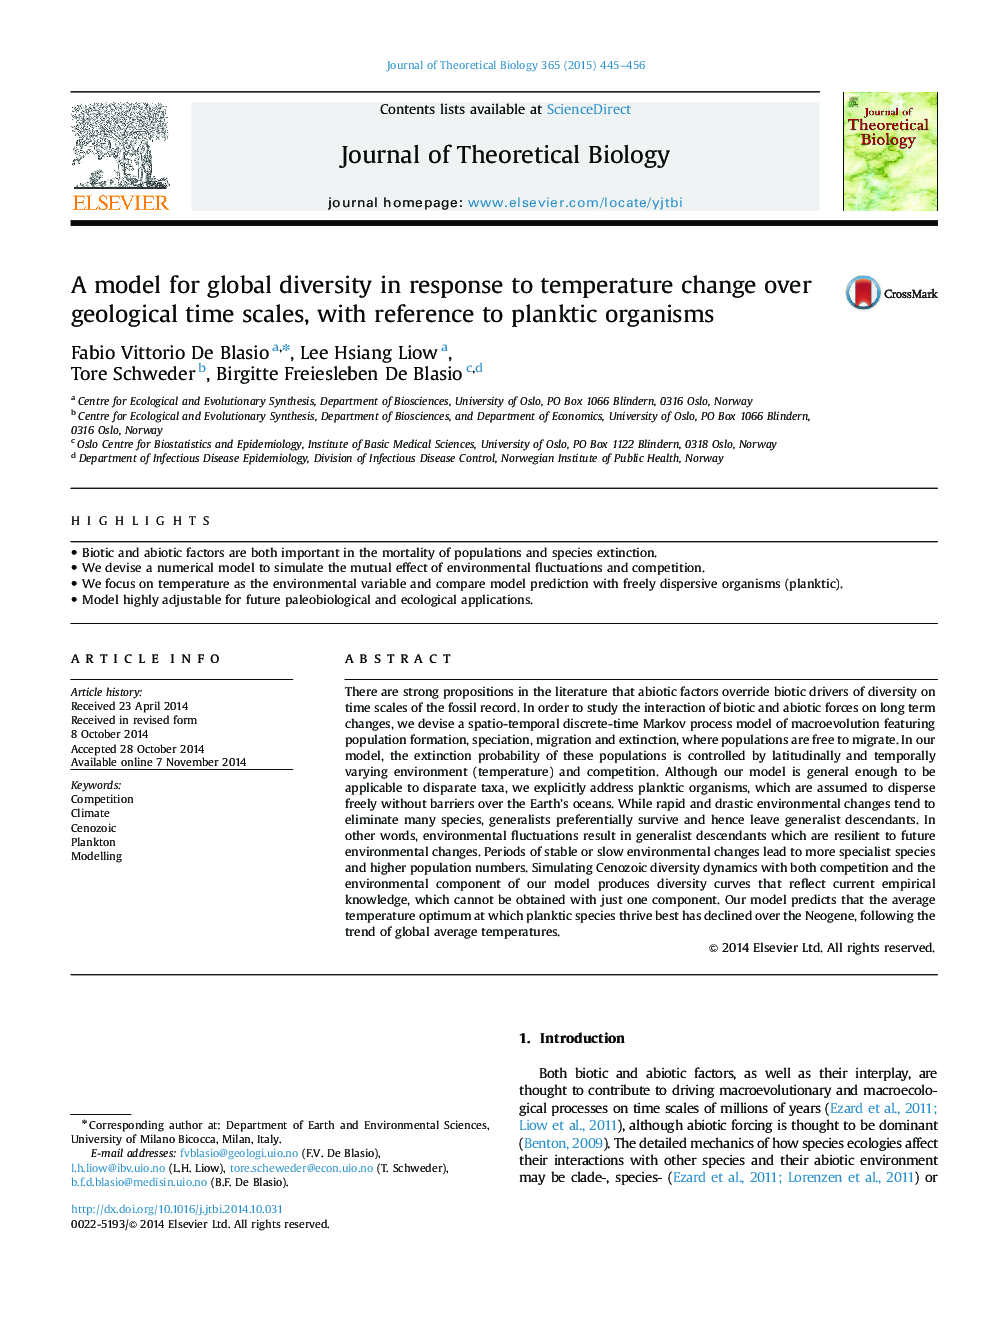 یک مدل برای تنوع جهانی در پاسخ به تغییر دما در مقیاس زمانی زمین شناسی، با ارجاع به ارگانیسم های پلانکسی 